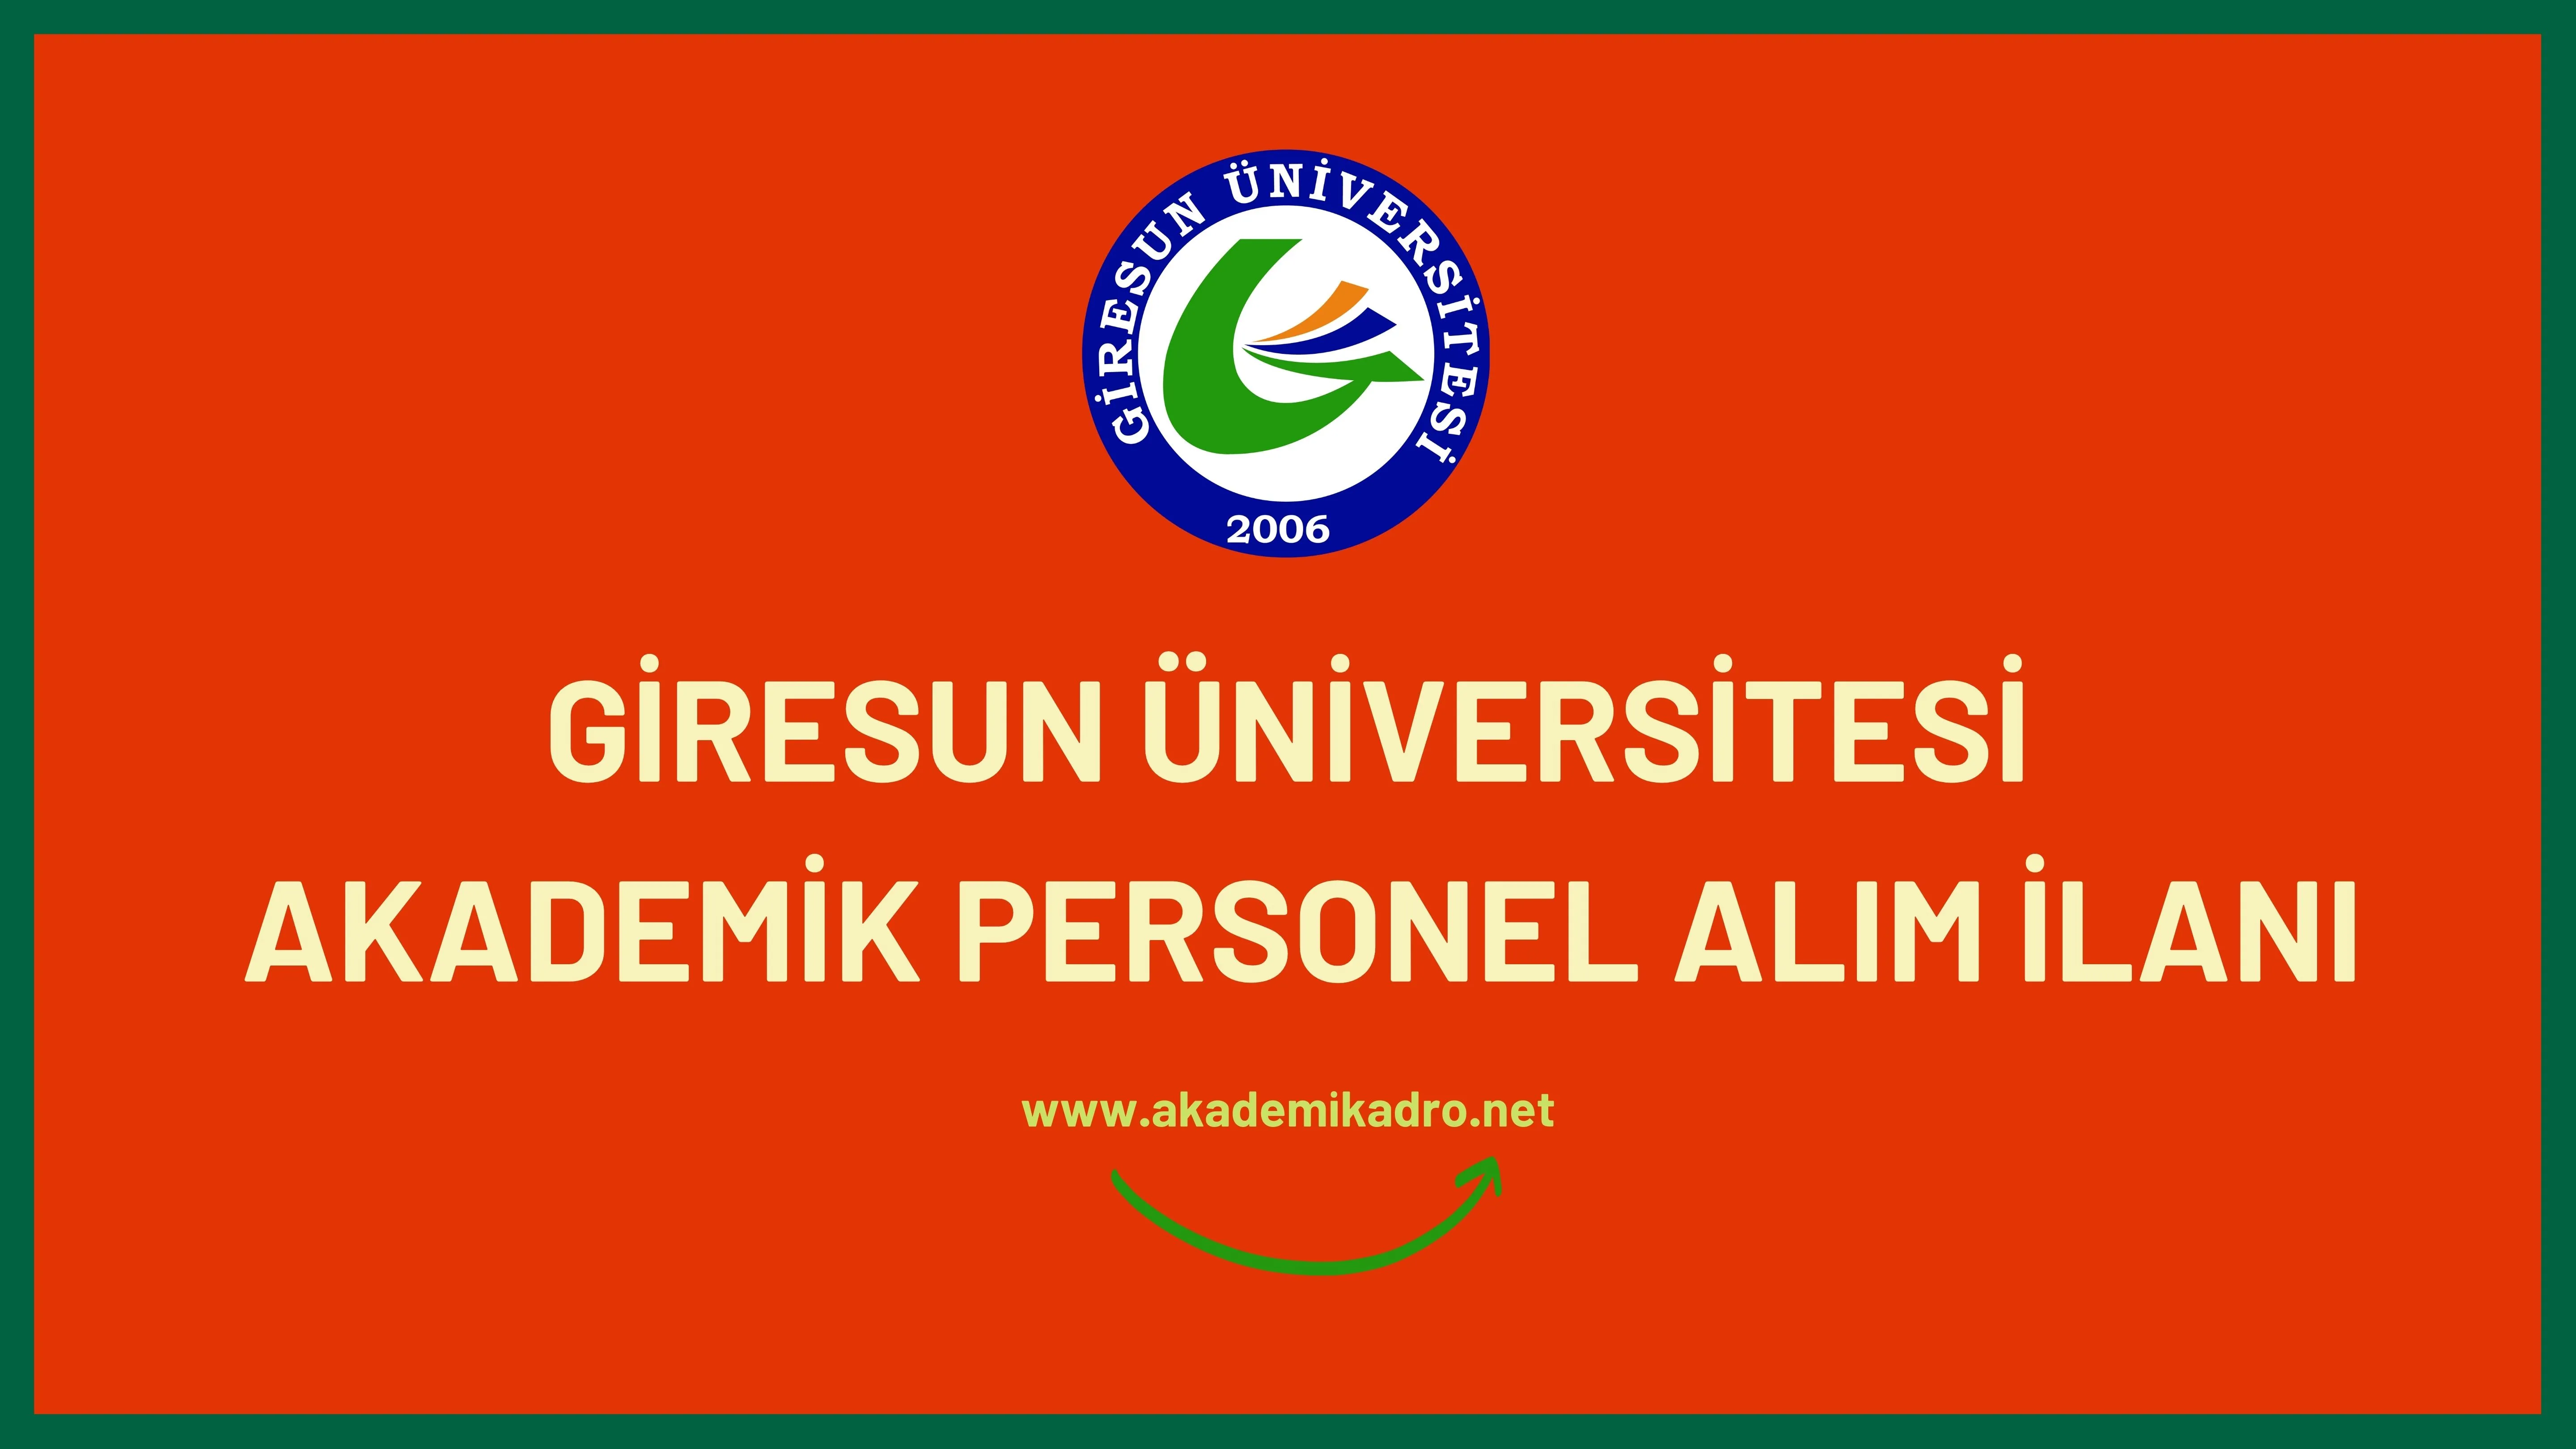 Giresun Üniversitesi birçok alandan 30 akademik personel alacak. Son başvuru tarihi 16 Kasım 2022.